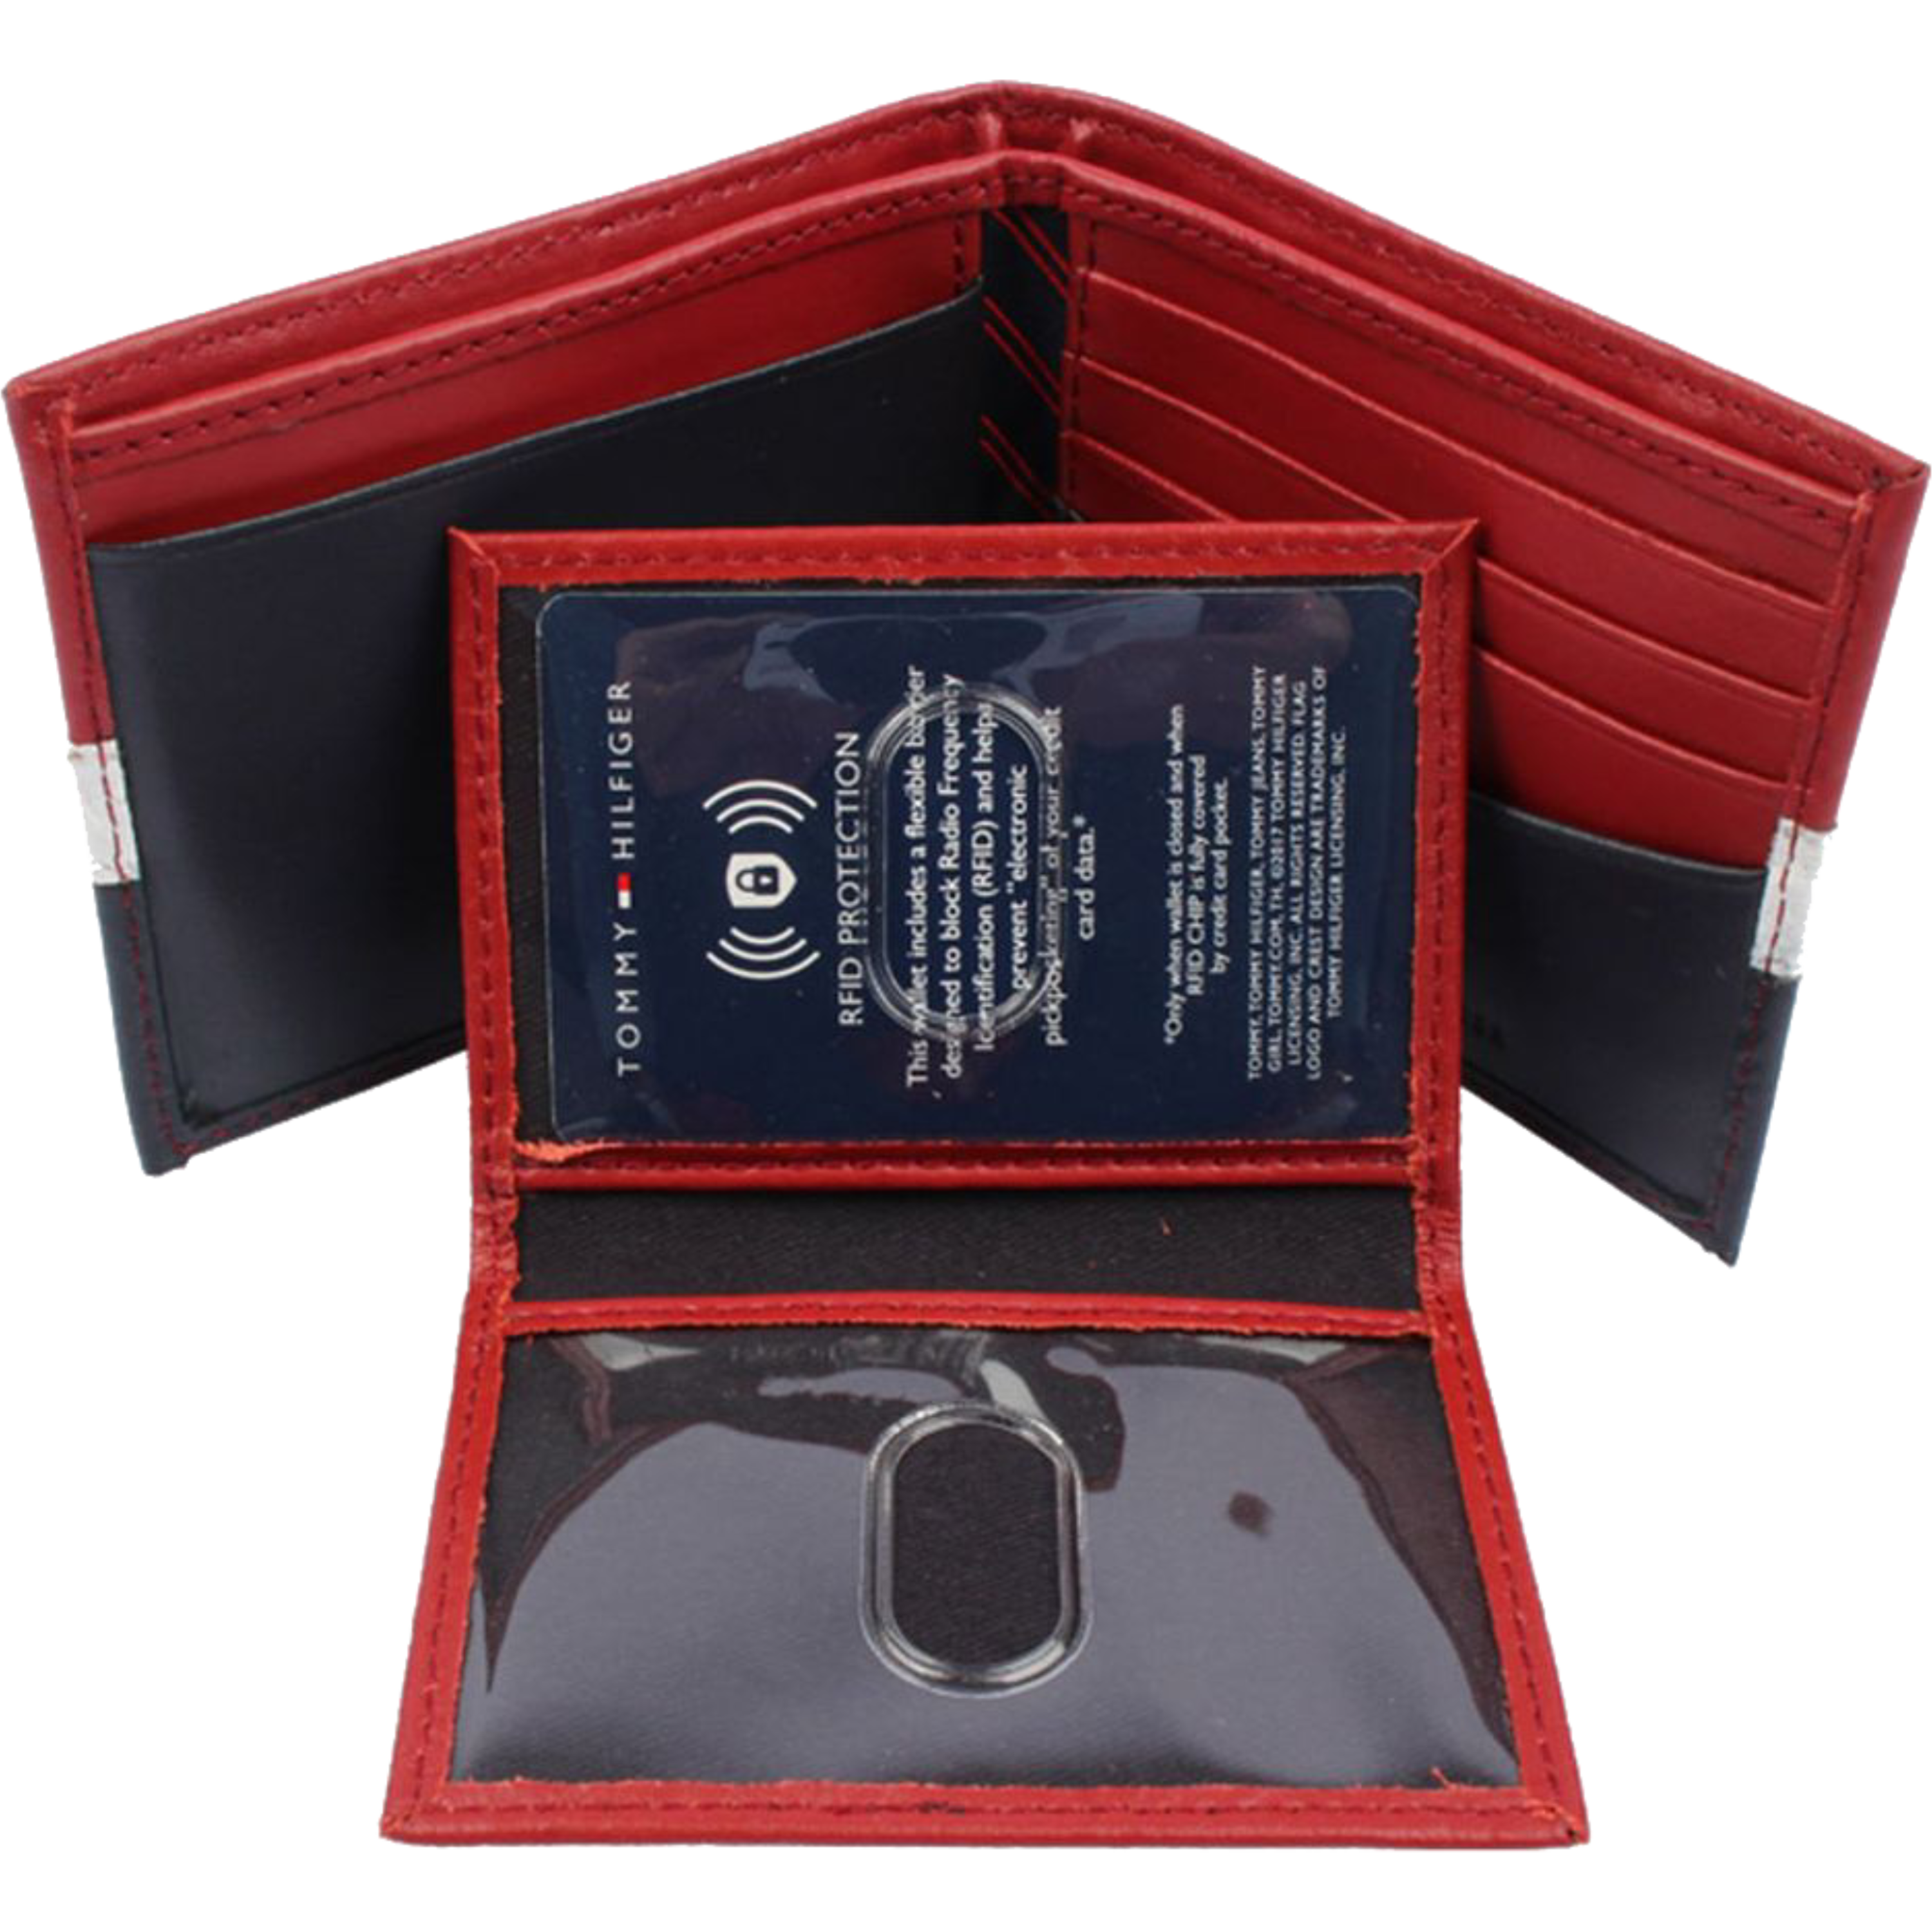 ארנק לגבר דגם Tommy Hilfiger RFID Blocking Bifold - צבע כחול/אדום/לבן